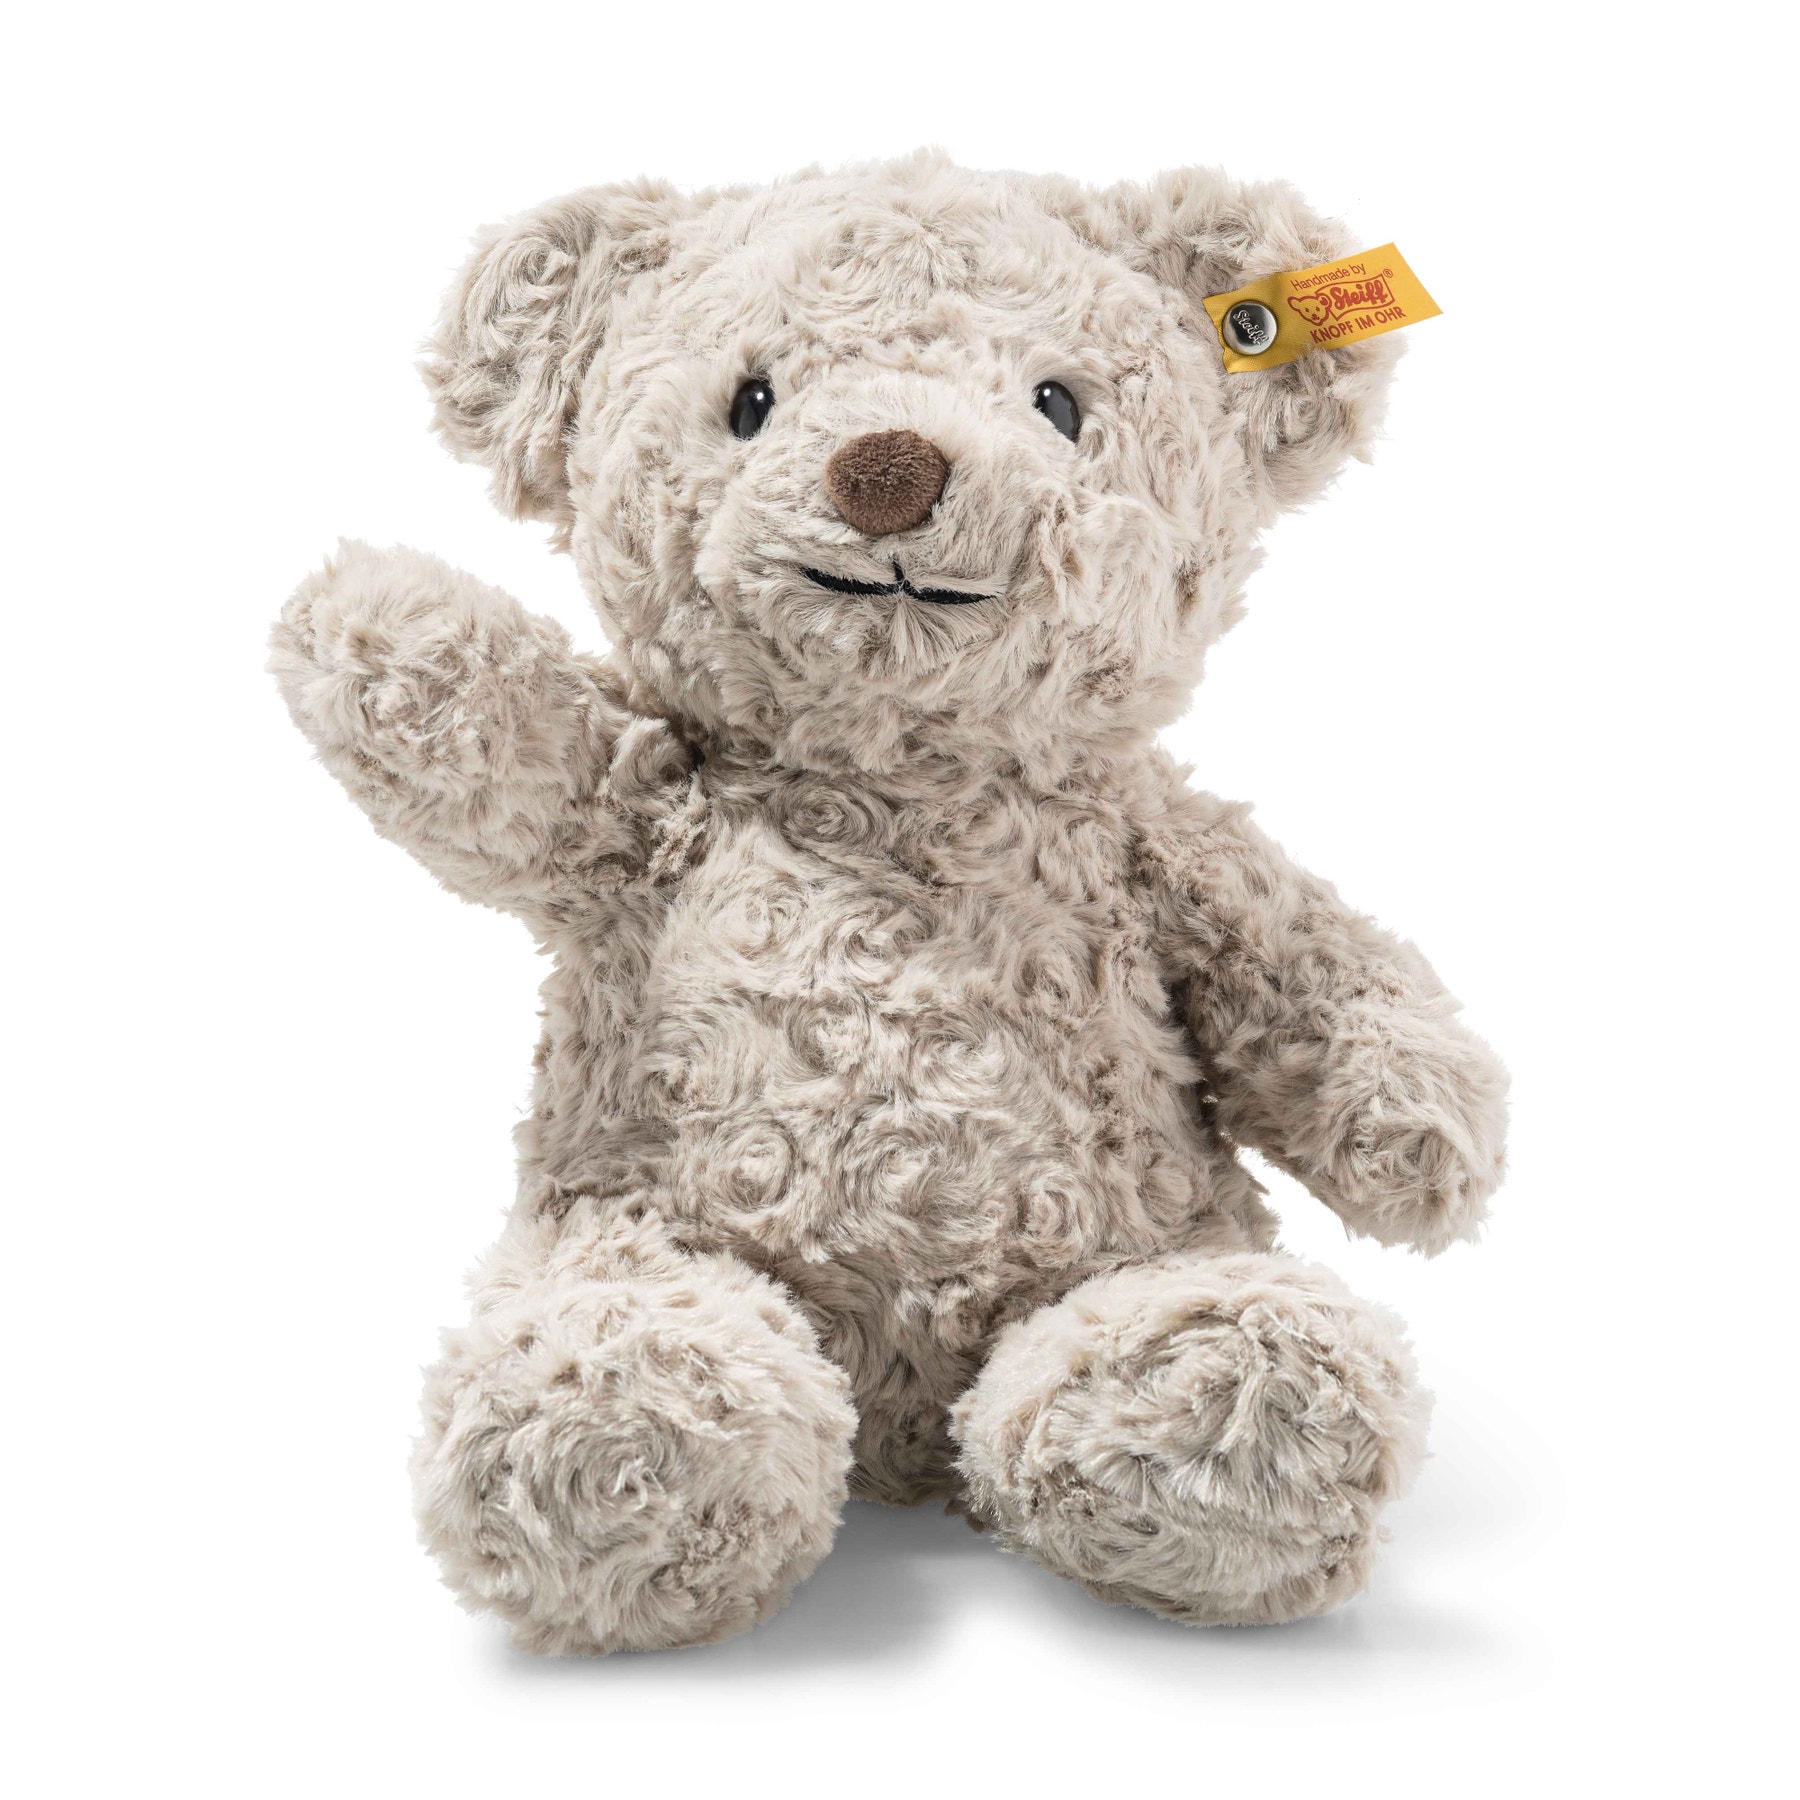 Soft Cuddly Friends Honey Teddy bear